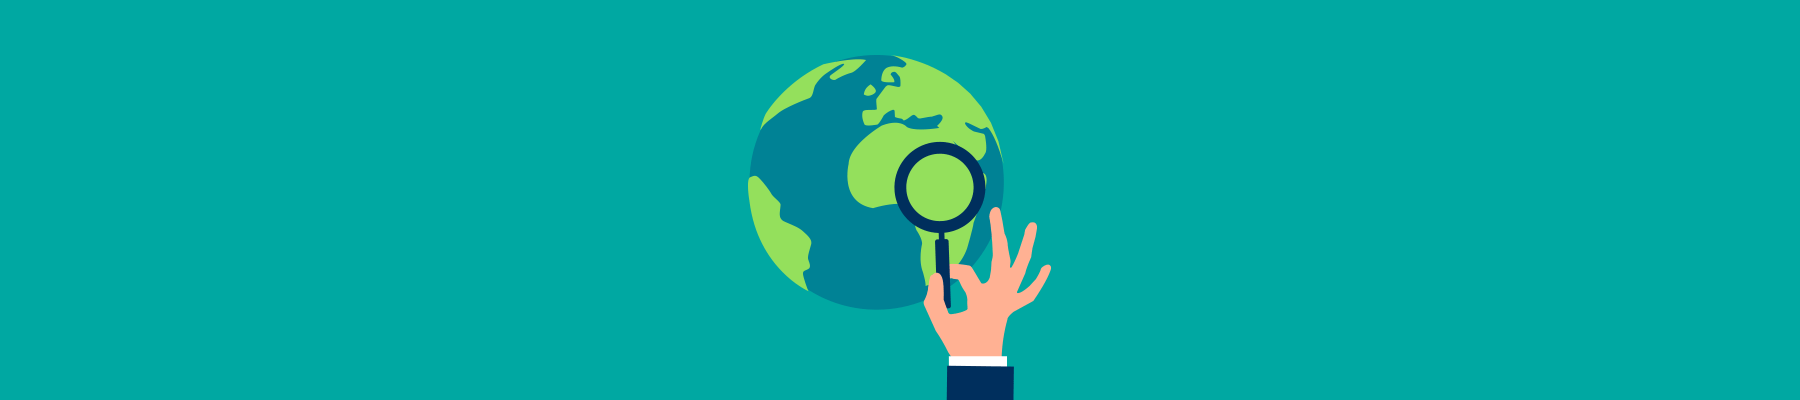 Nachhaltigkeit | Kompetenzzentrum Handel | Bild 6635477 Pixabay